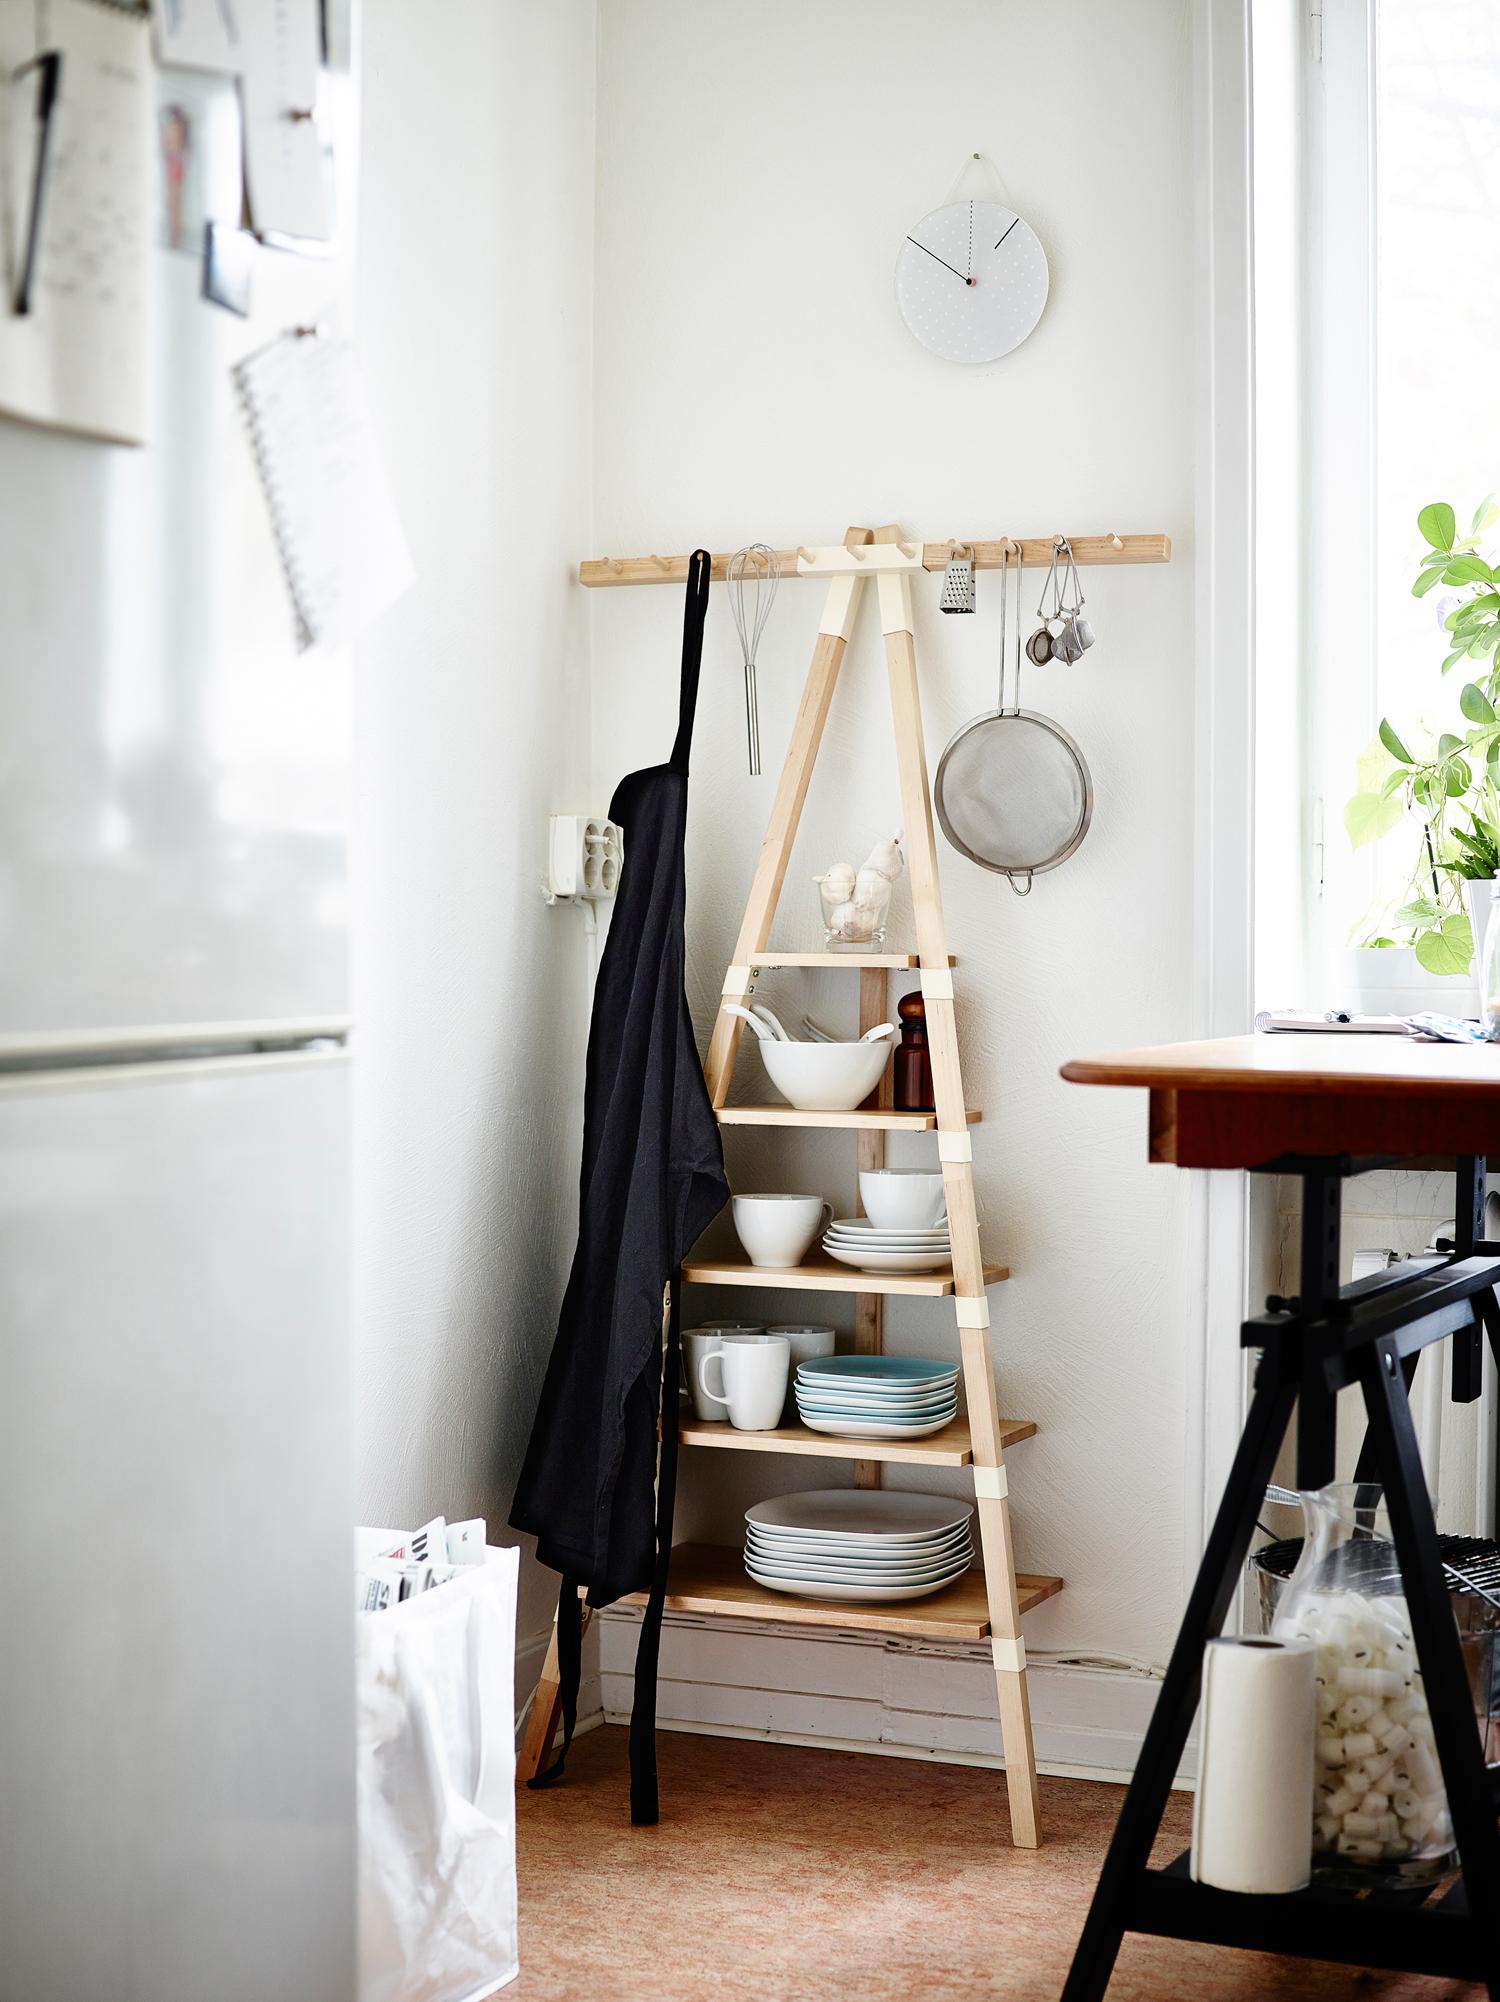 Küchenregal mit Stil #wandregal #ikea #küchenregal #küchenaufbewahrung ©Inter IKEA Systems B.V.